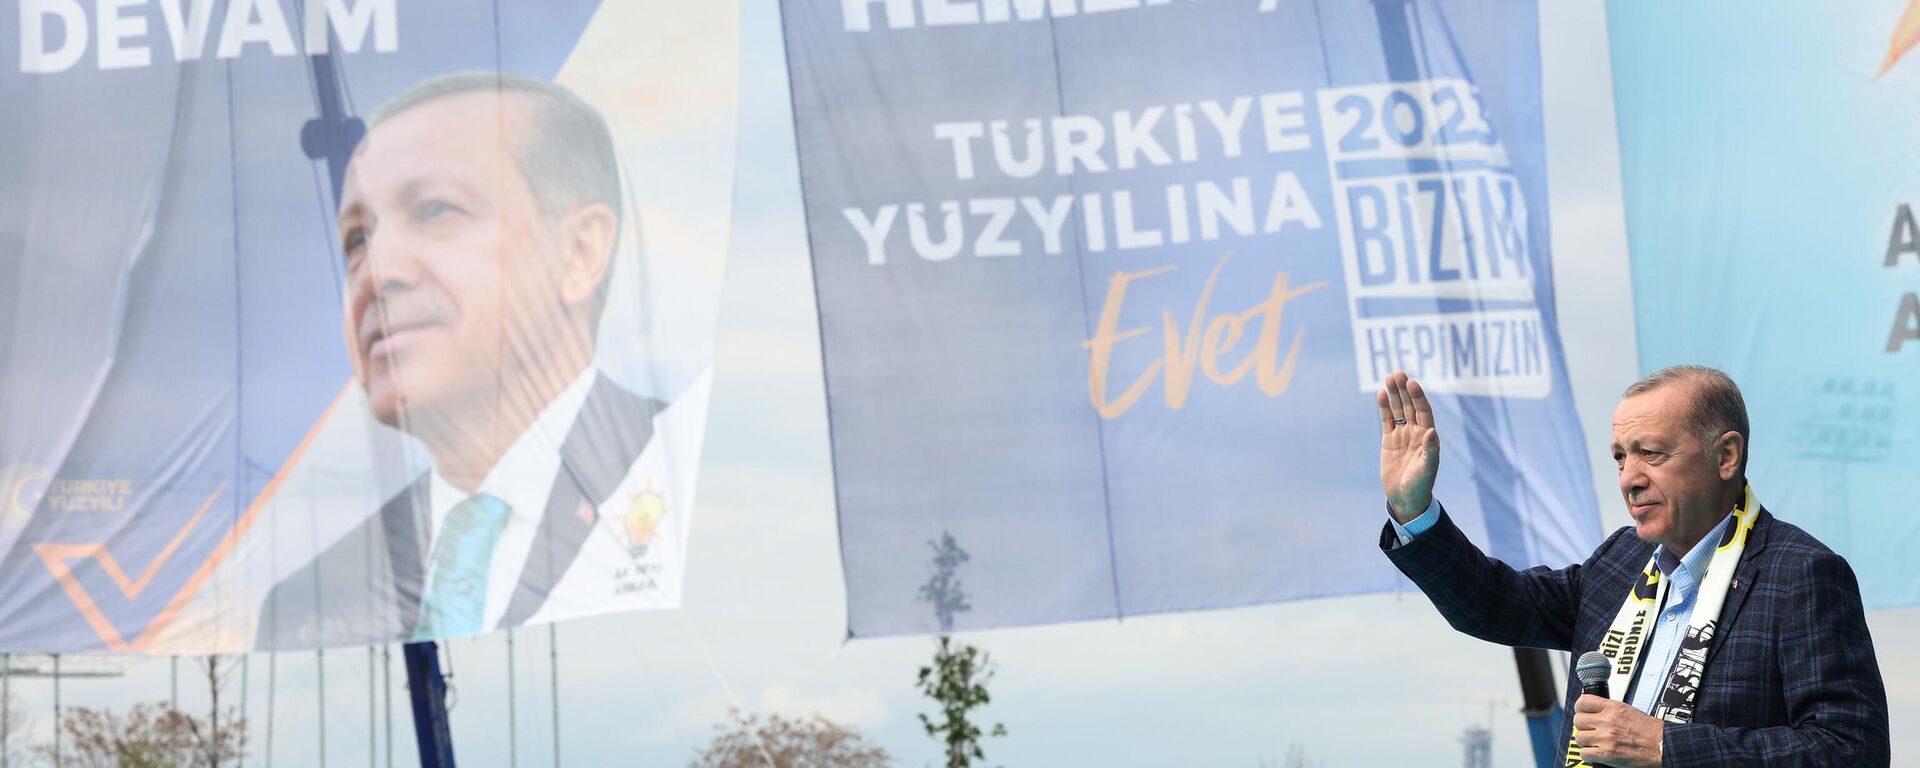 Cumhur İttifakı'nın Başkent Millet Bahçesi’nde düzenlenen Ankara mitinginde konuşan Cumhurbaşkanı Erdoğan, Bu milletin elinden TEKNOFEST'i alamazsınız, İHA'ları SİHA'ları alamazsınız, Akıncı'ları alamazsınız, alamayacaksınız. Kızılelma'yı hiç alamazsınız dedi. - Sputnik Türkiye, 1920, 30.04.2023